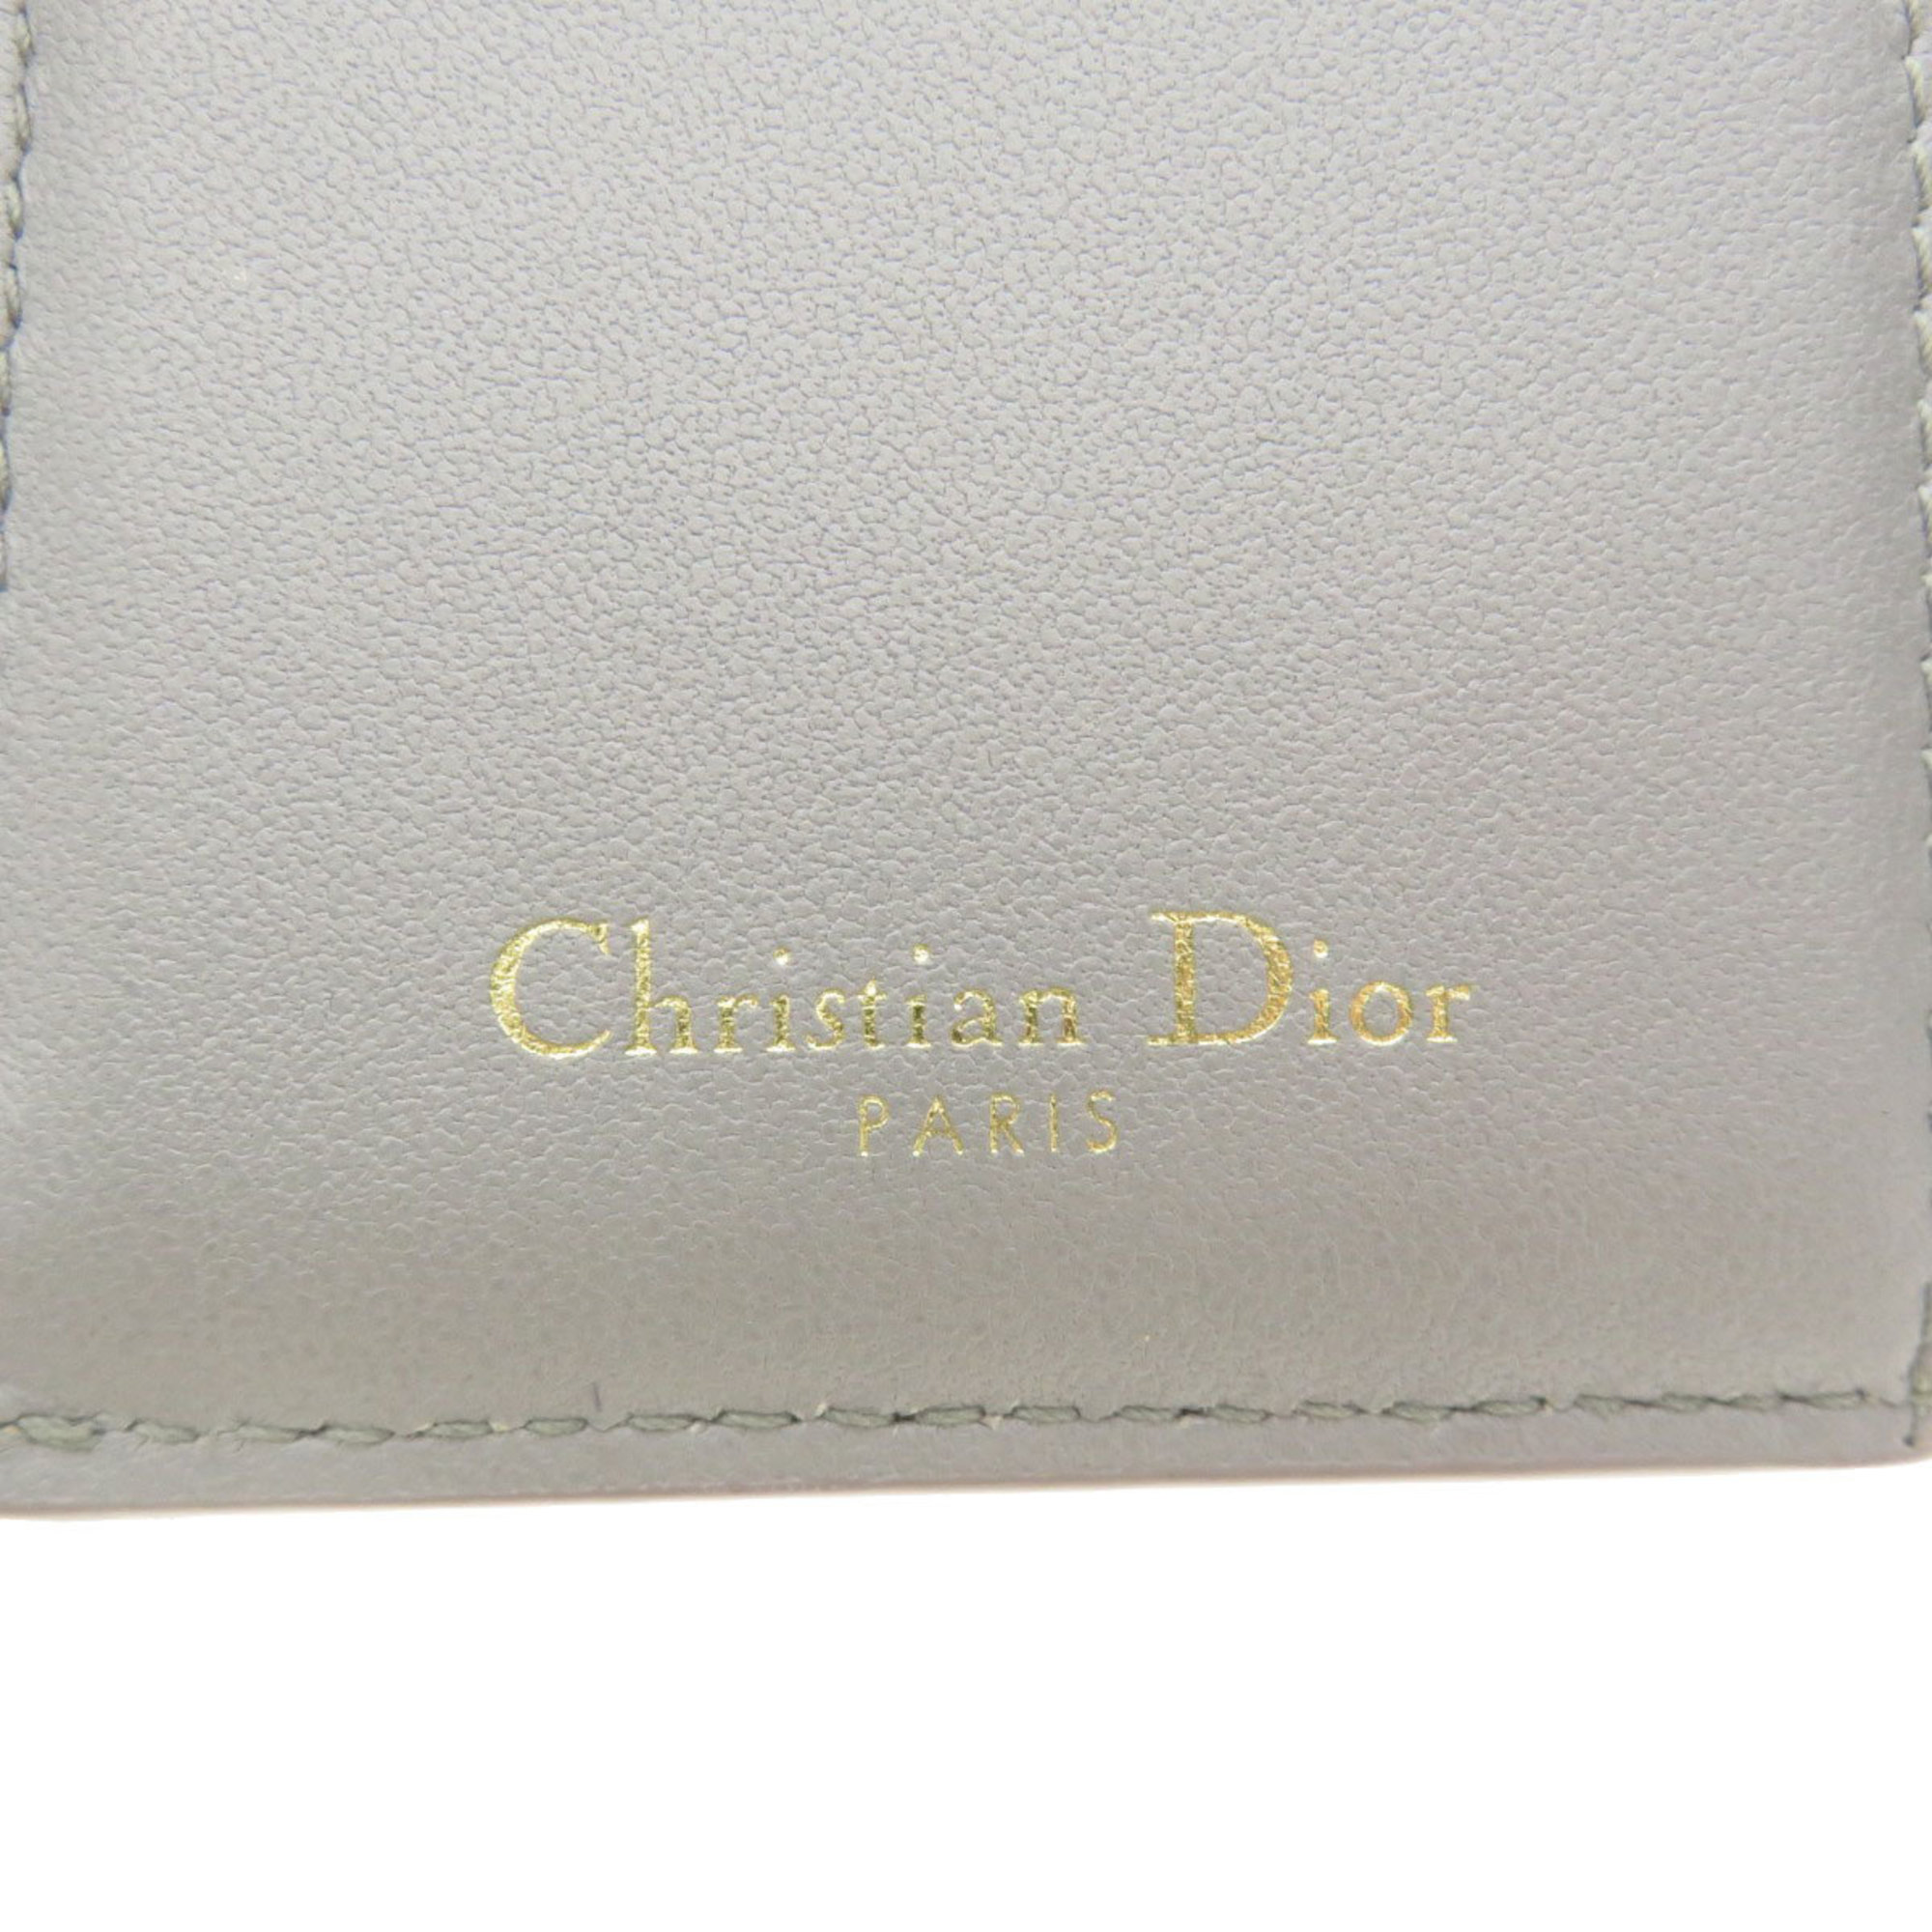 Christian Dior Motif Wallet Bi-fold Calfskin Women's CHRISTIAN DIOR